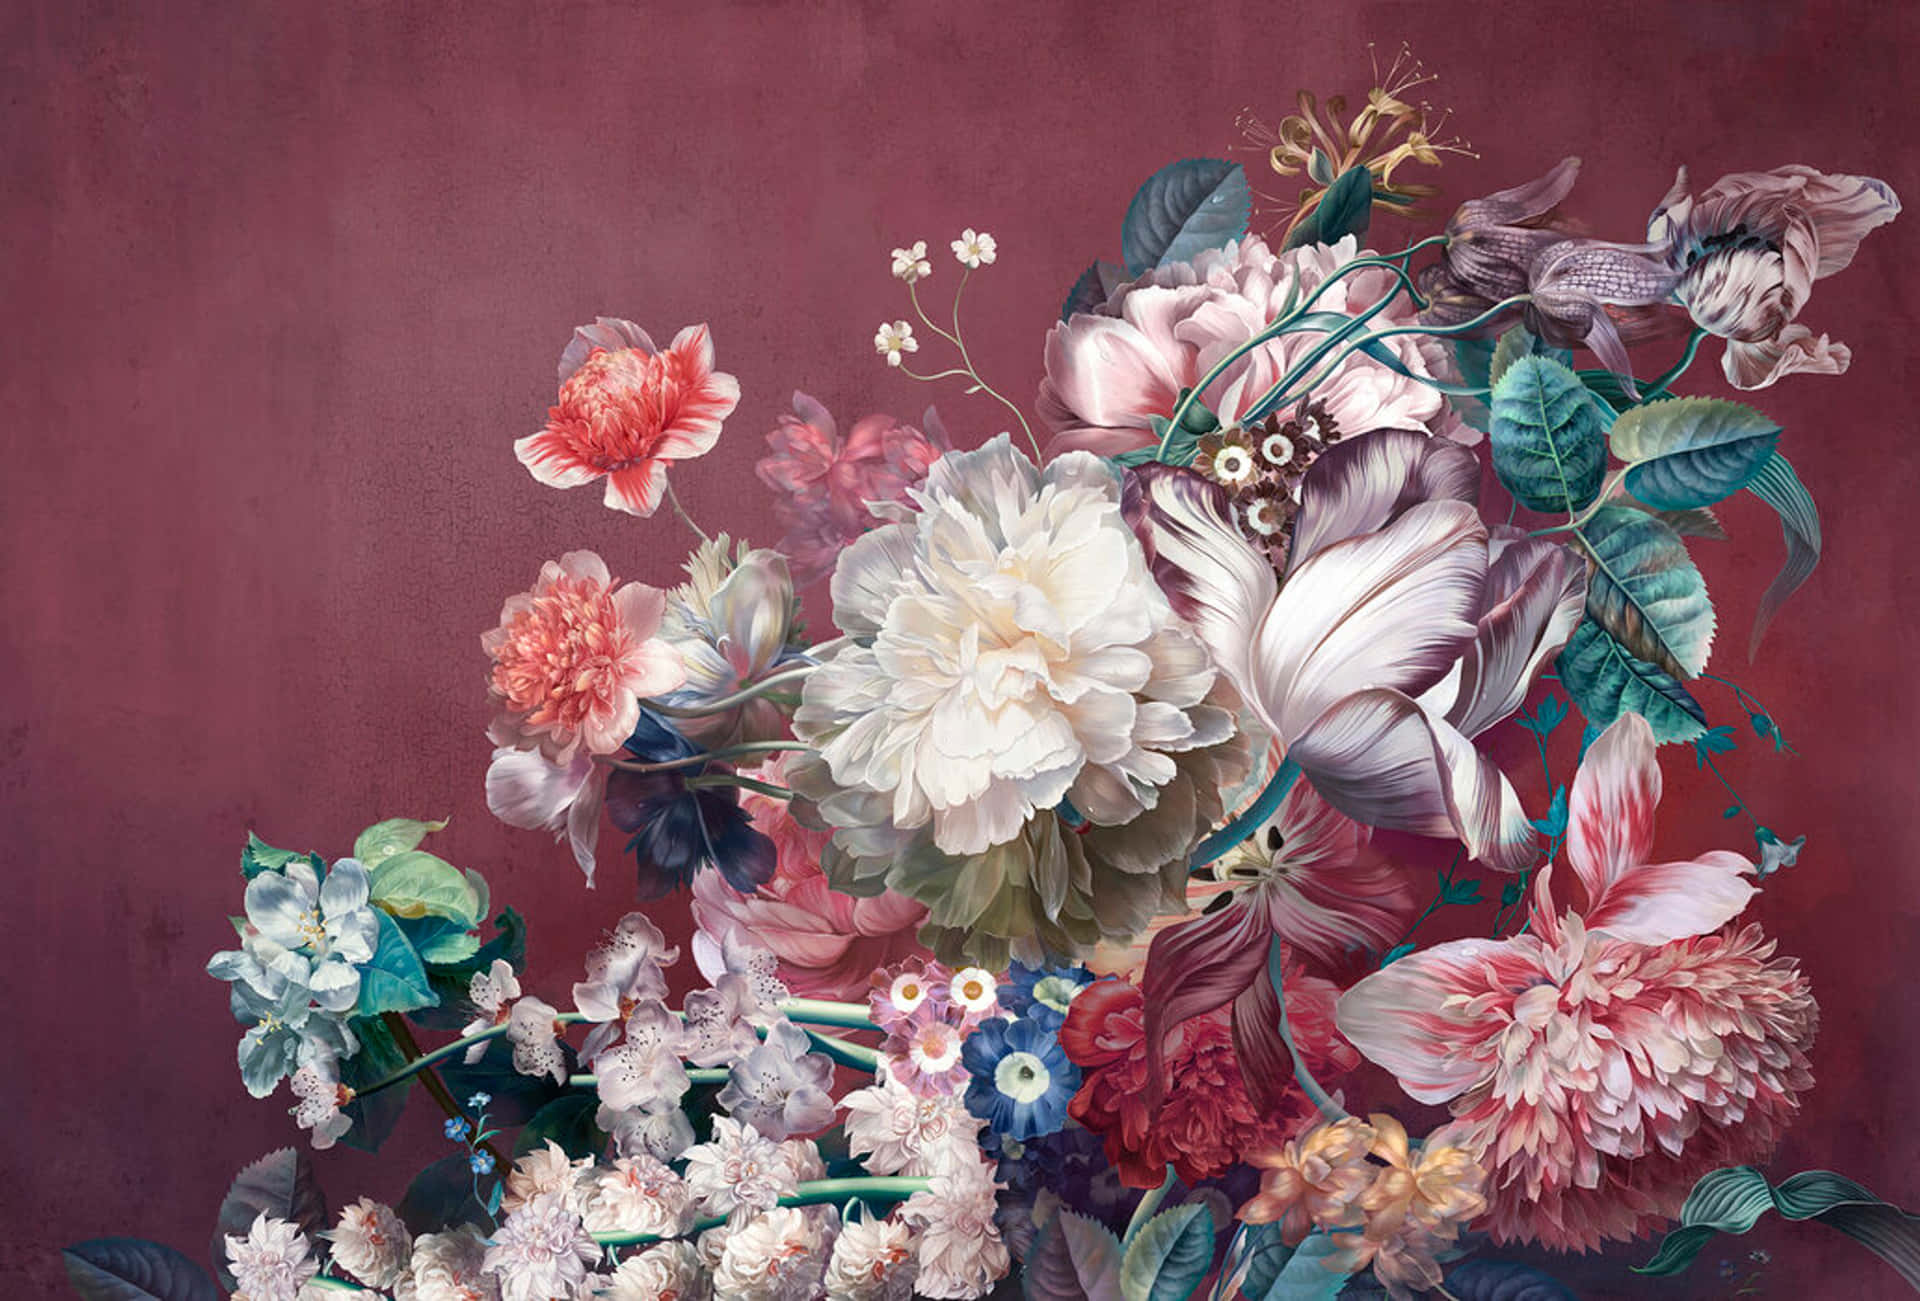 Eingemälde Von Blumen In Einer Vase. Wallpaper